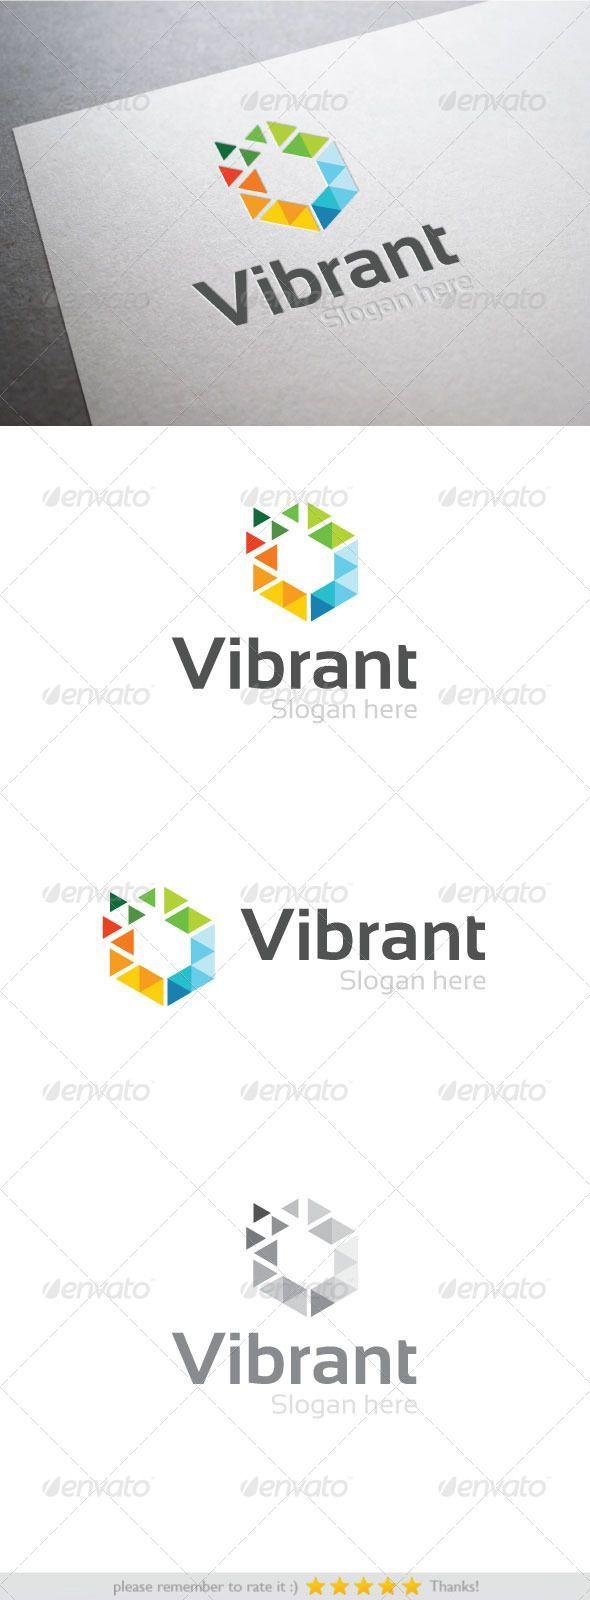 Vibrant Logo - Abstract Logo Template